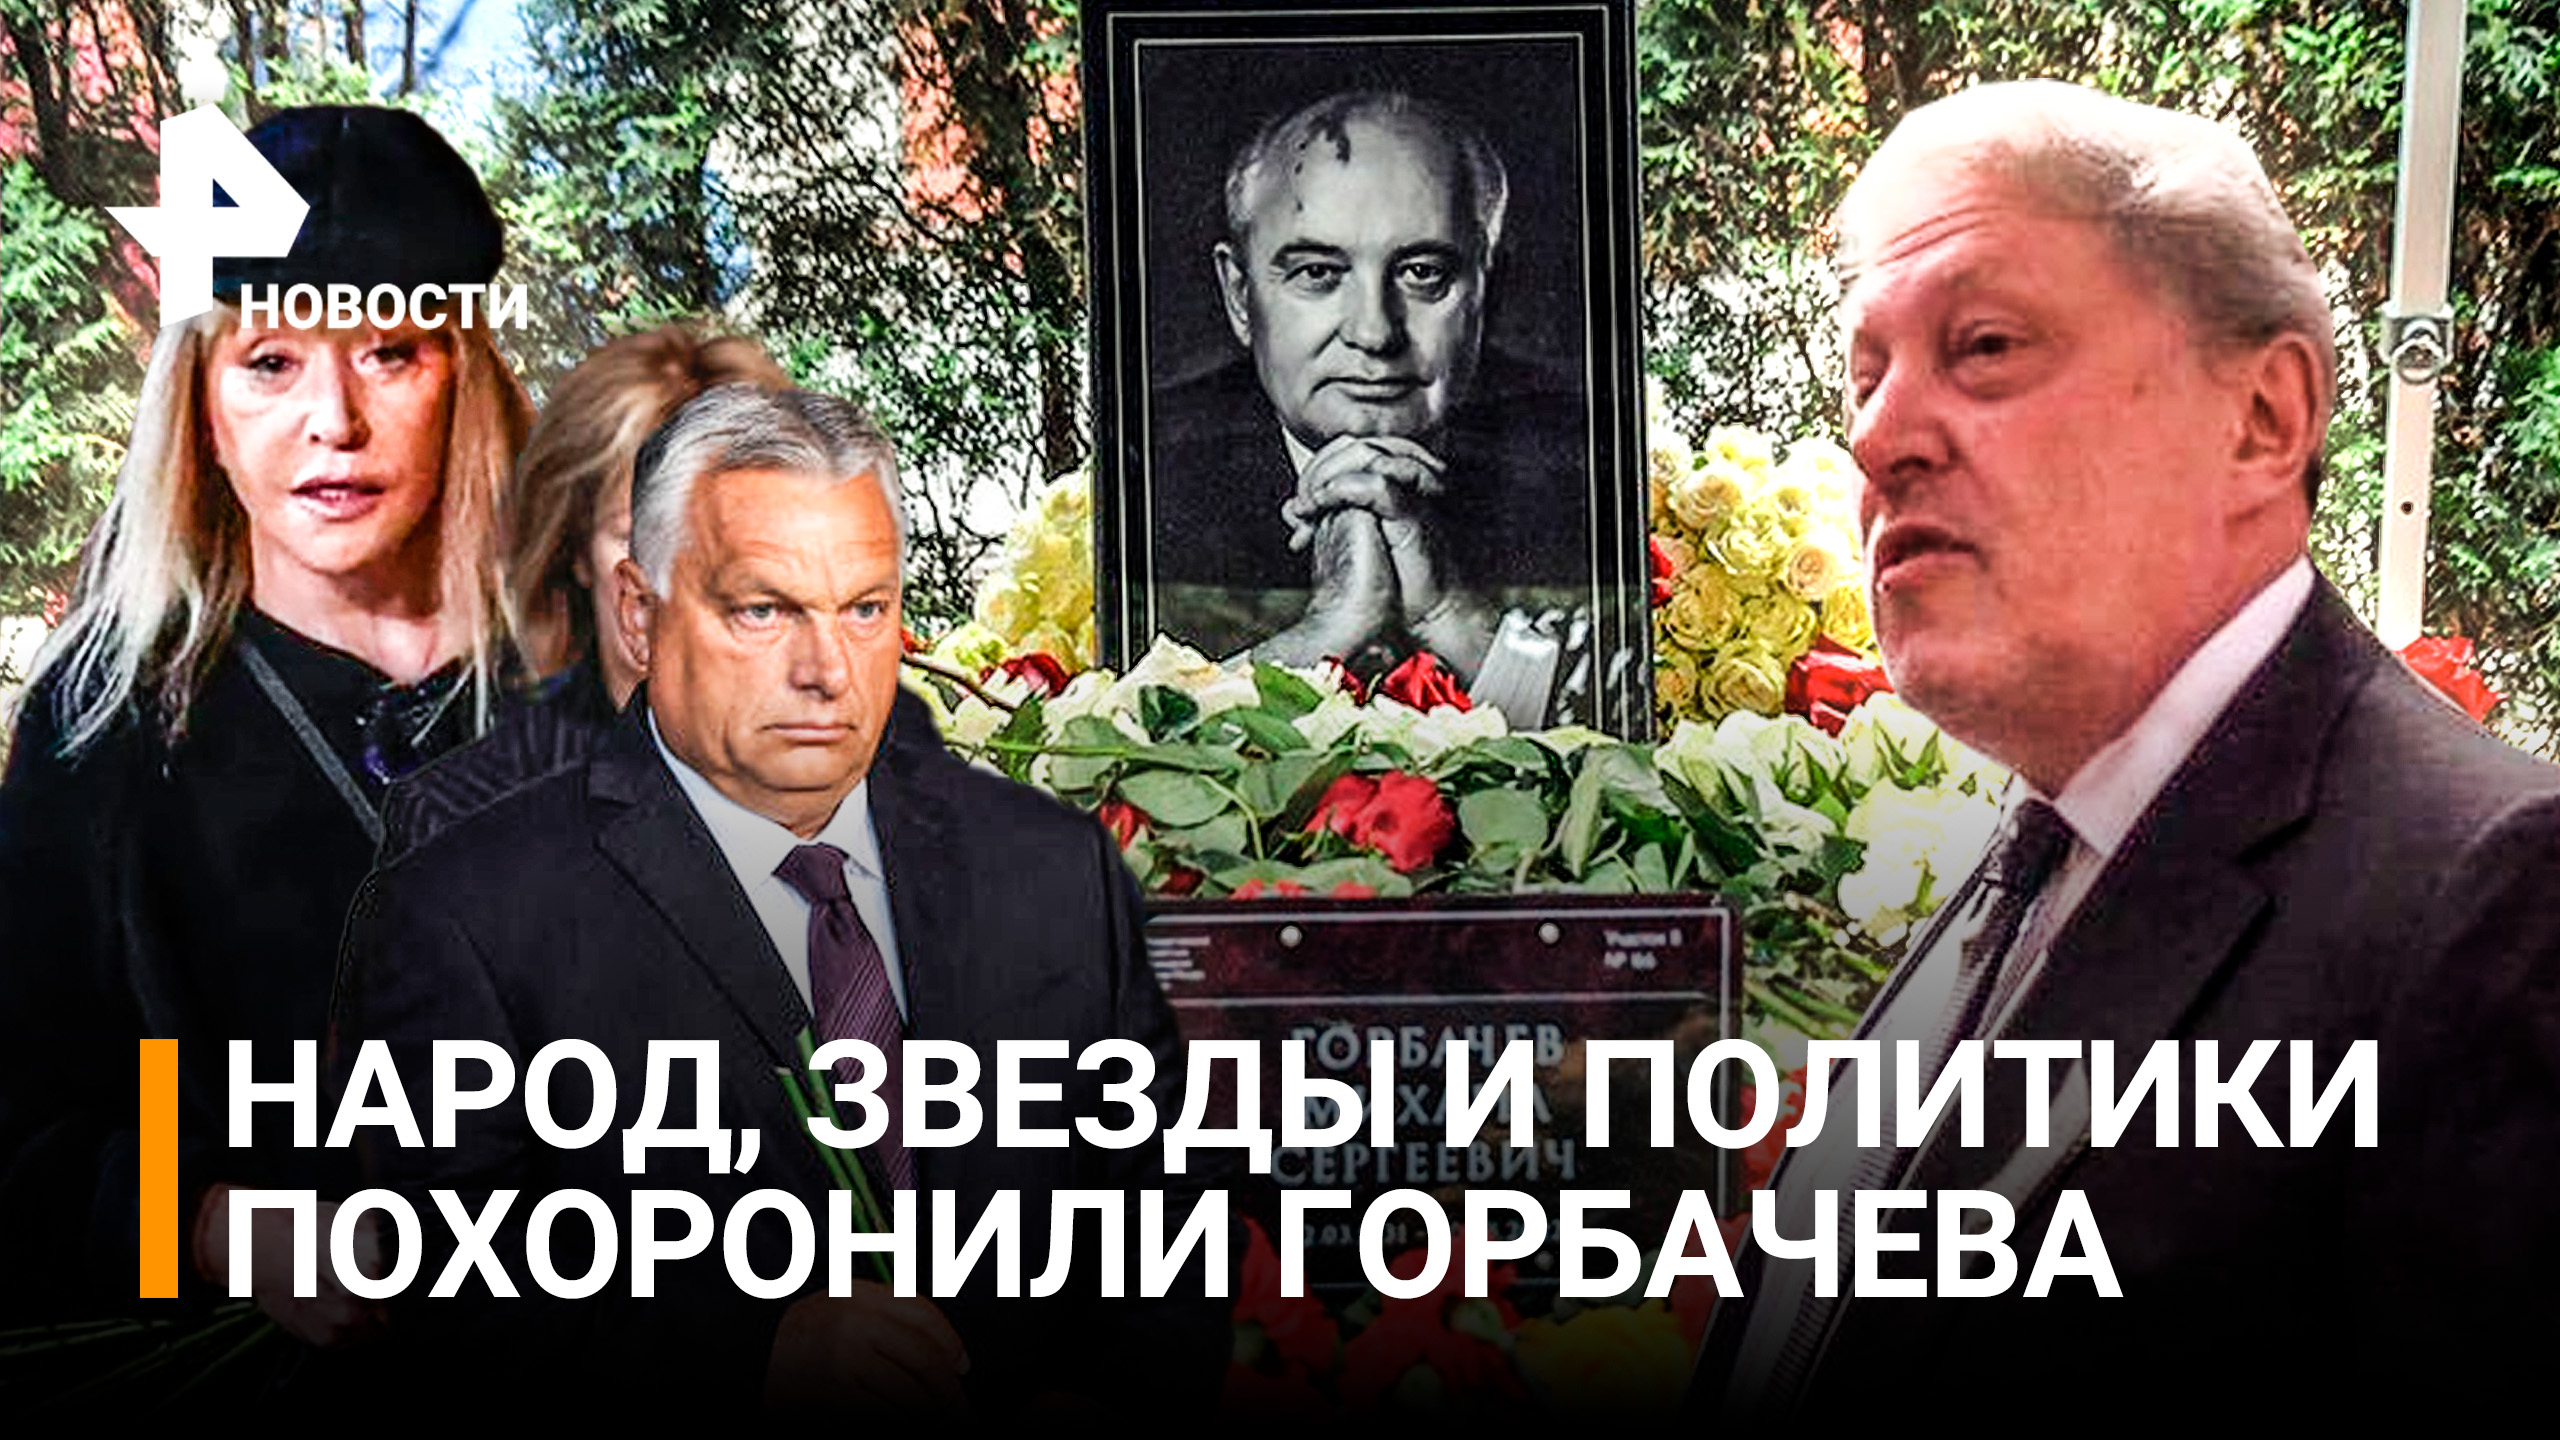 Похороны Горбачева: как первого президента СССР проводили в последний путь / РЕН Новости